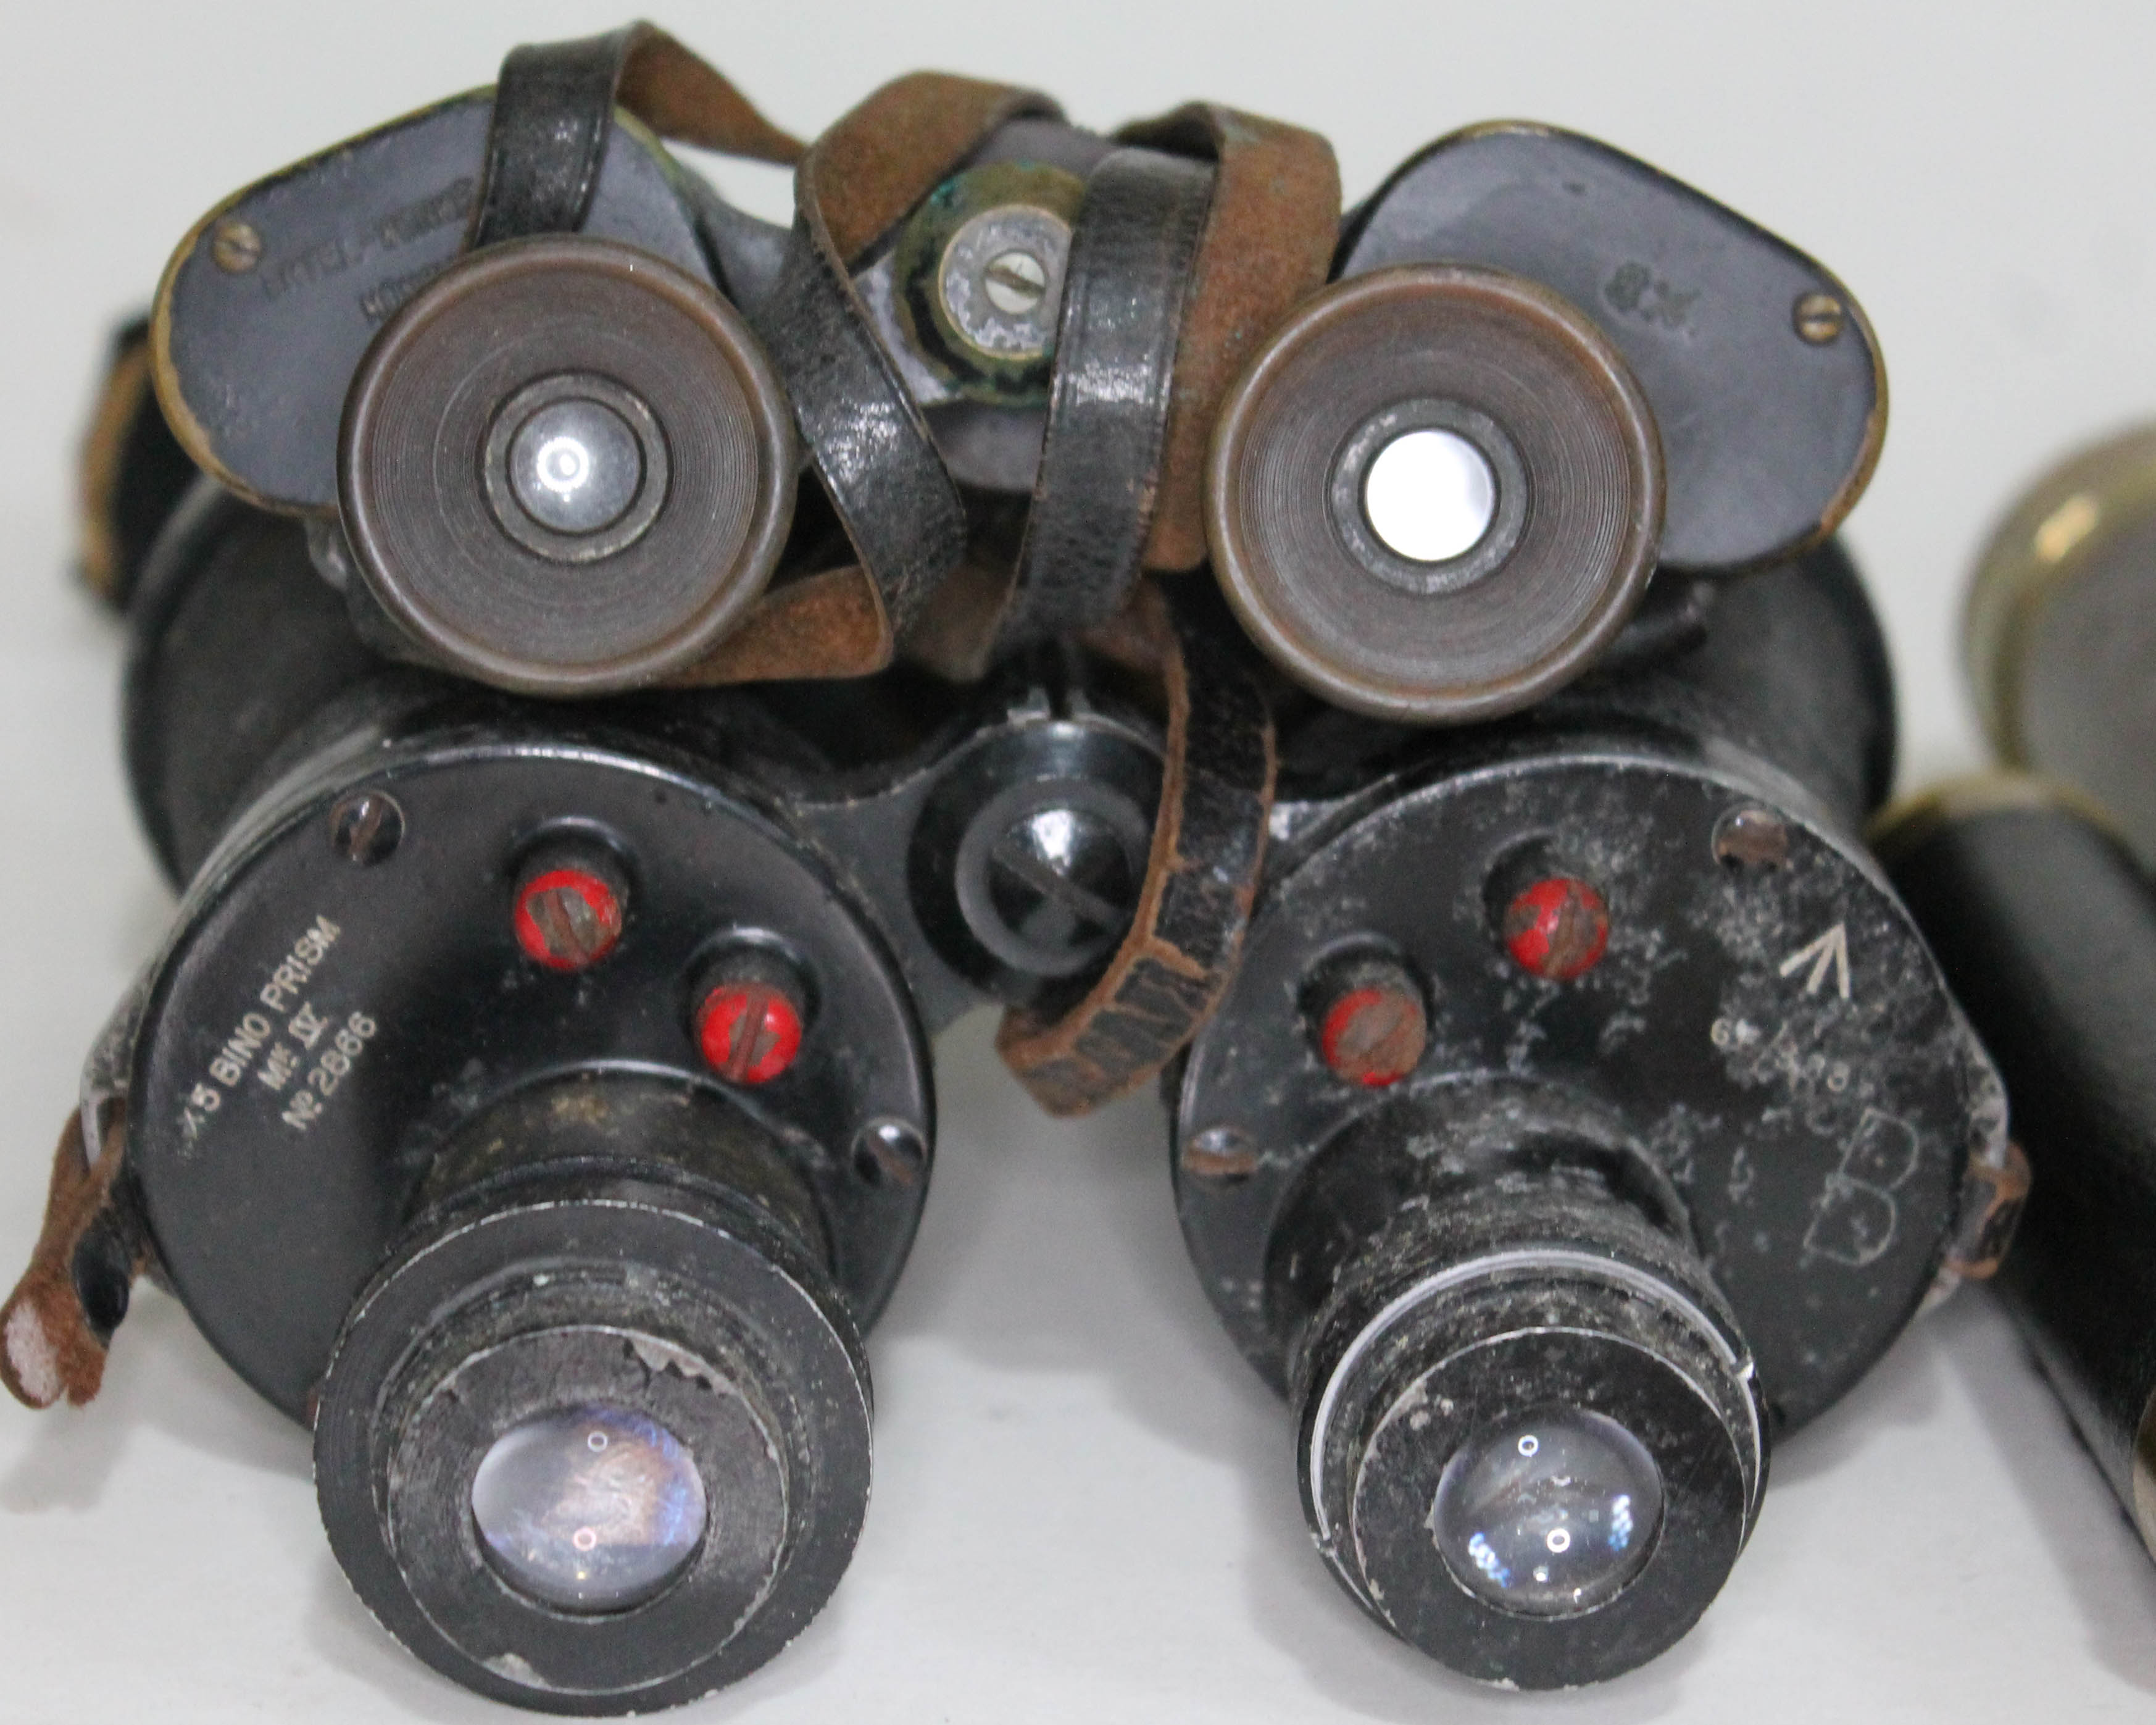 Two pairs of binoculars and two telescopes. - Bild 3 aus 3